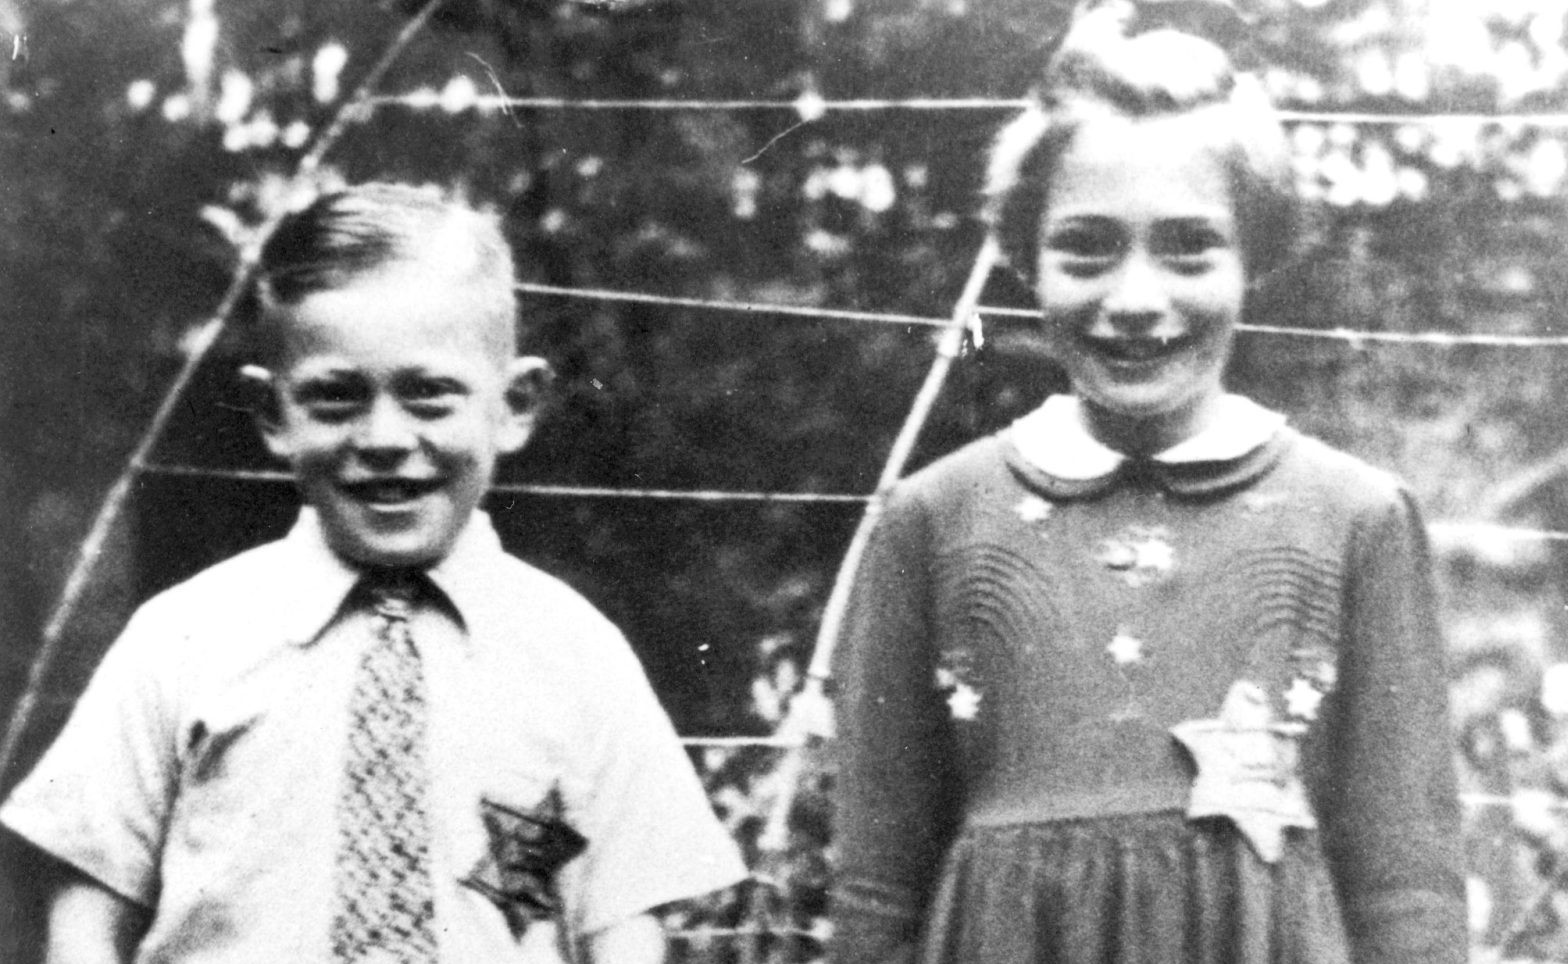 Ett svartvitt fotografi med en pojke och en flicka med så kallade judestjärnor på kläderna.